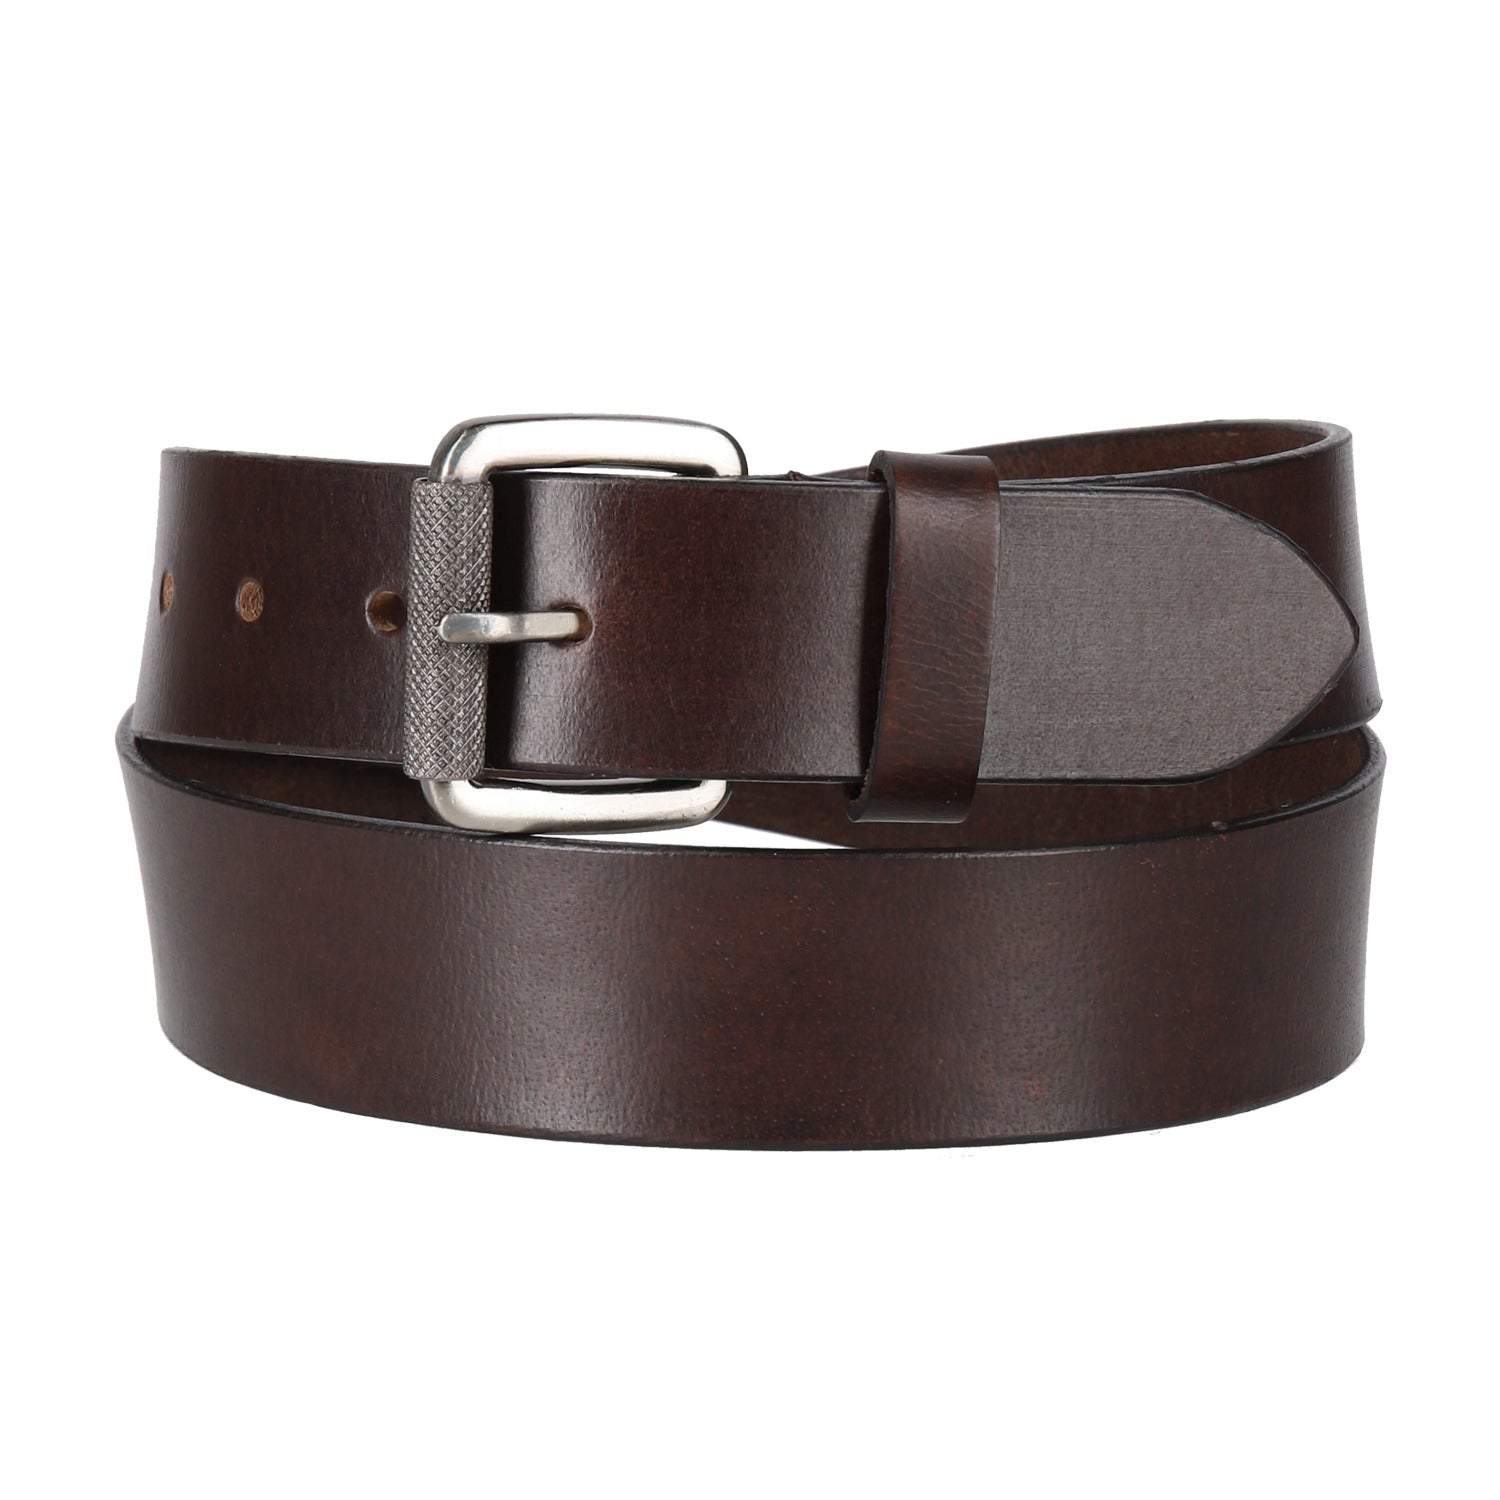 RIDEZ LEATHER BELT Genuine Leather Belt Dark Brown CB-124 